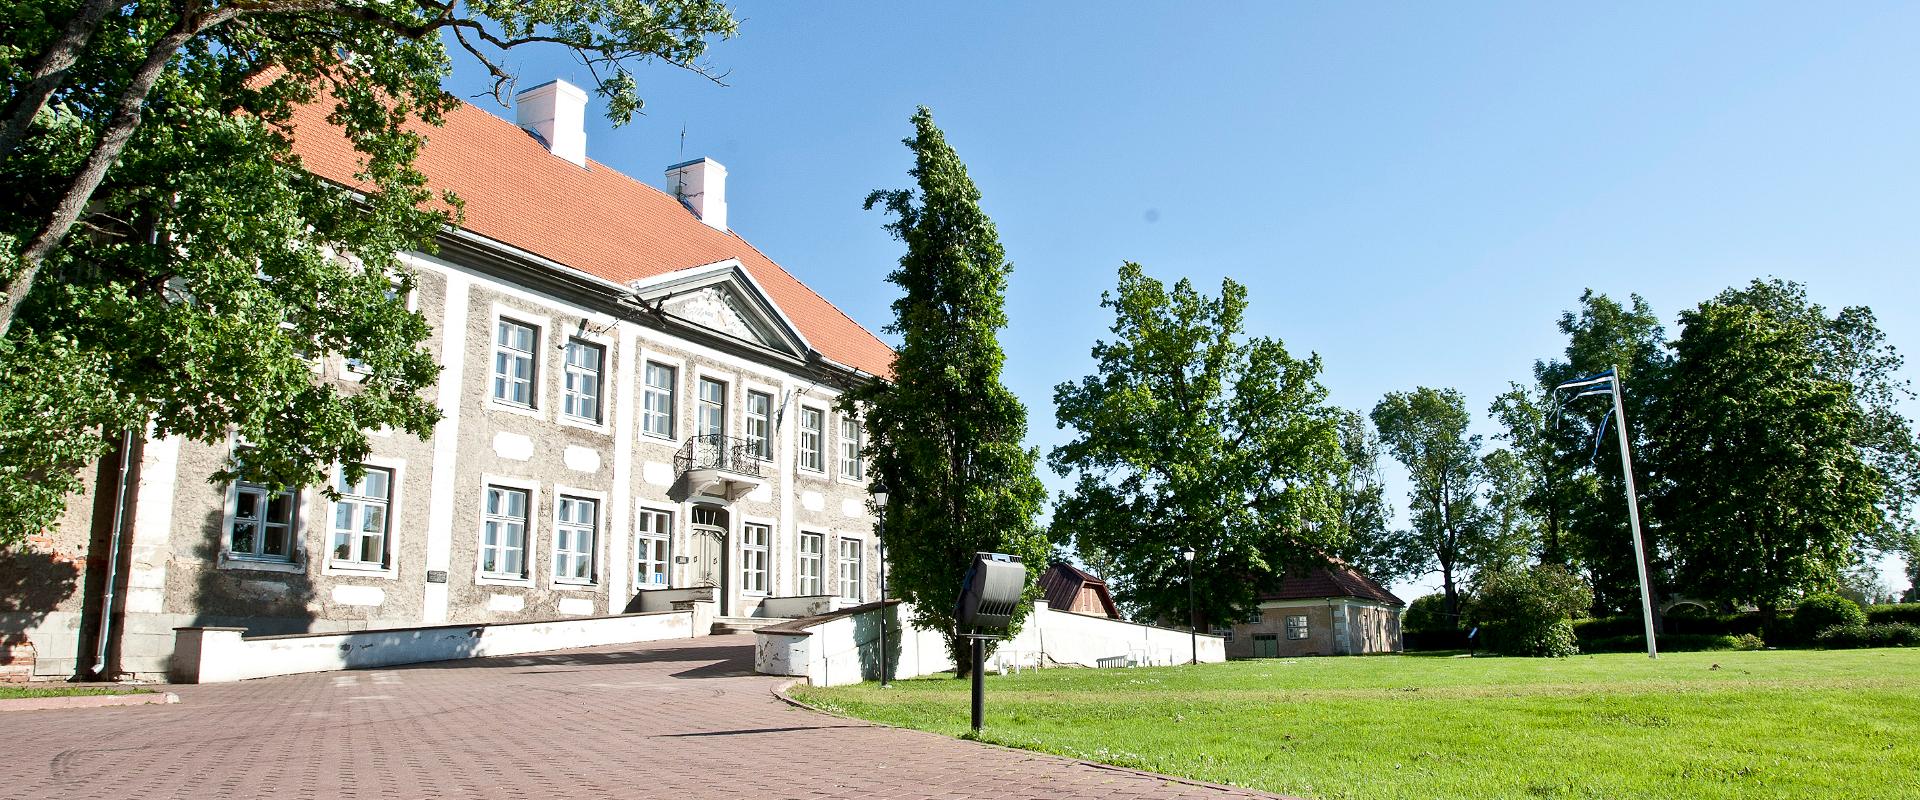 Ida-Virumaal asuvat Maidla mõisa on esmakordselt mainitud 1465.a. Praegune mõisabarokki esindav mõisamaja valmis 1767. aastal Georg Ludwig von Wrangel